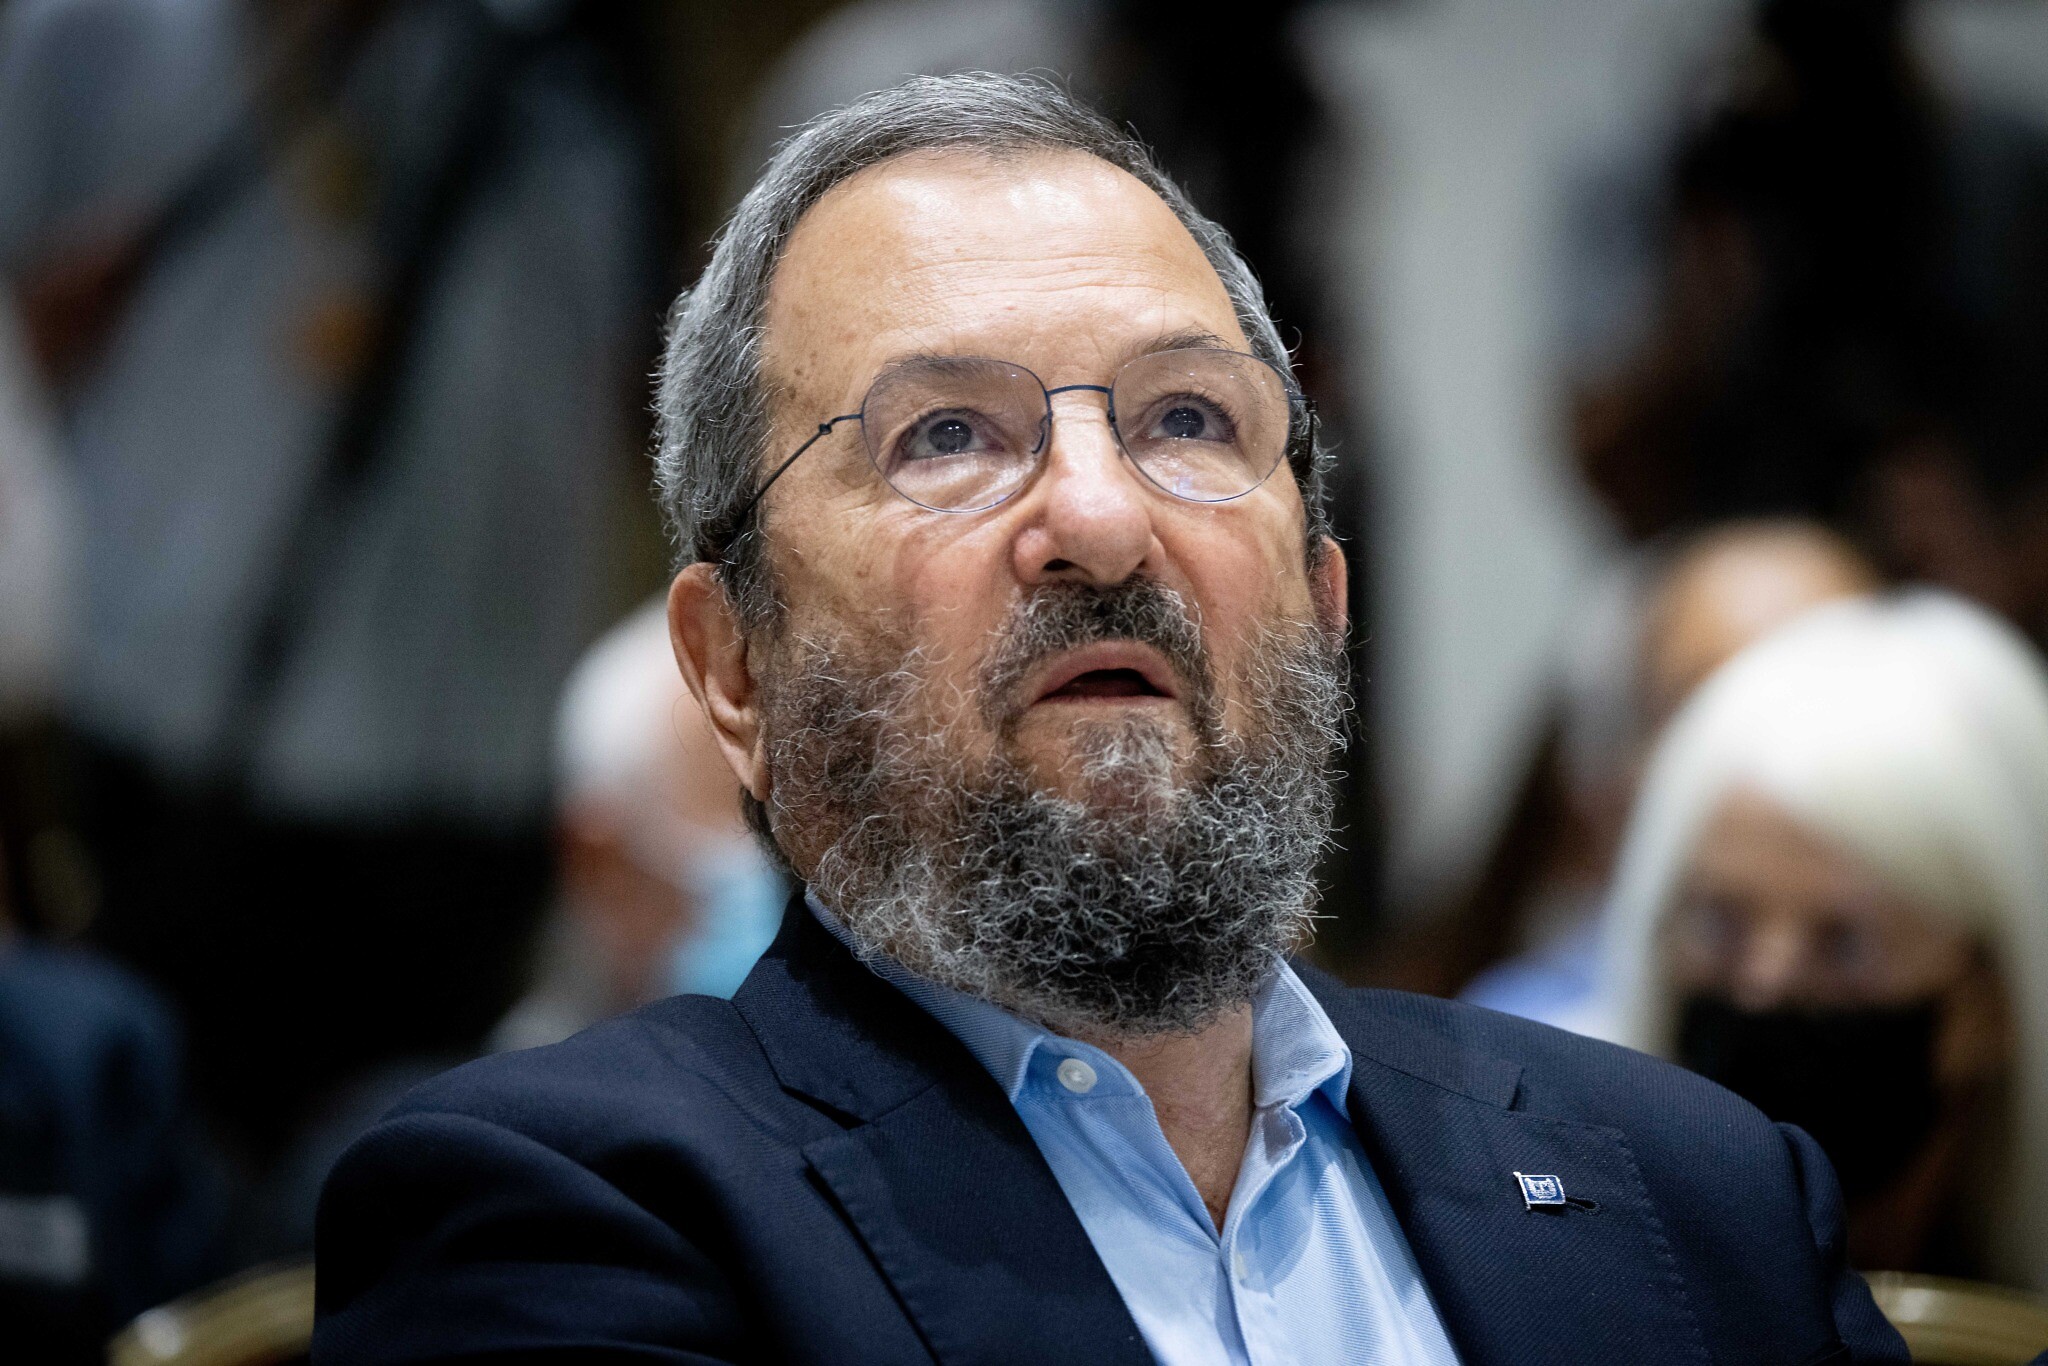 Ehud Barak: "La mia ultima battaglia è per difendere la democrazia dai suoi nemici interni"